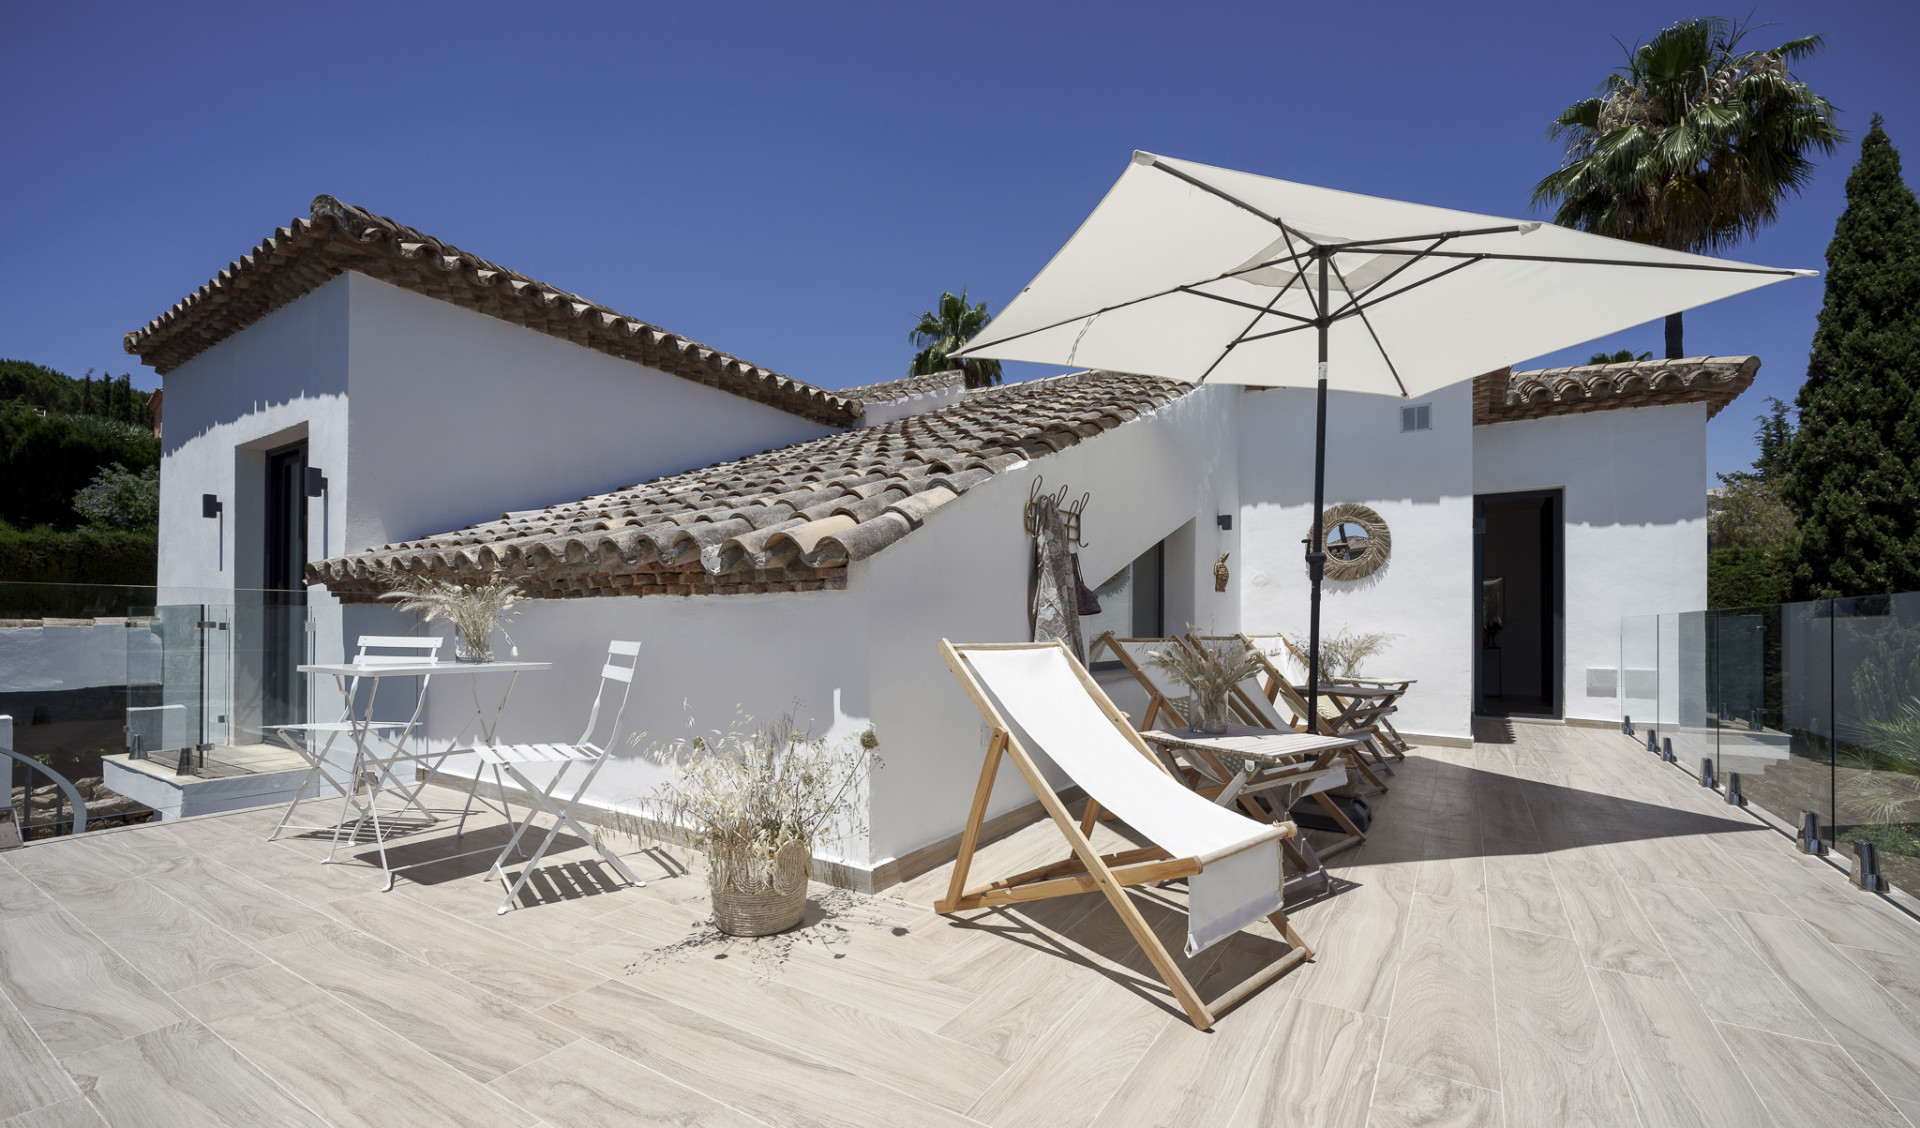 Villa Hibisco, villa contemporánea situada en una comunidad privada y segura de Nueva Andalucía.